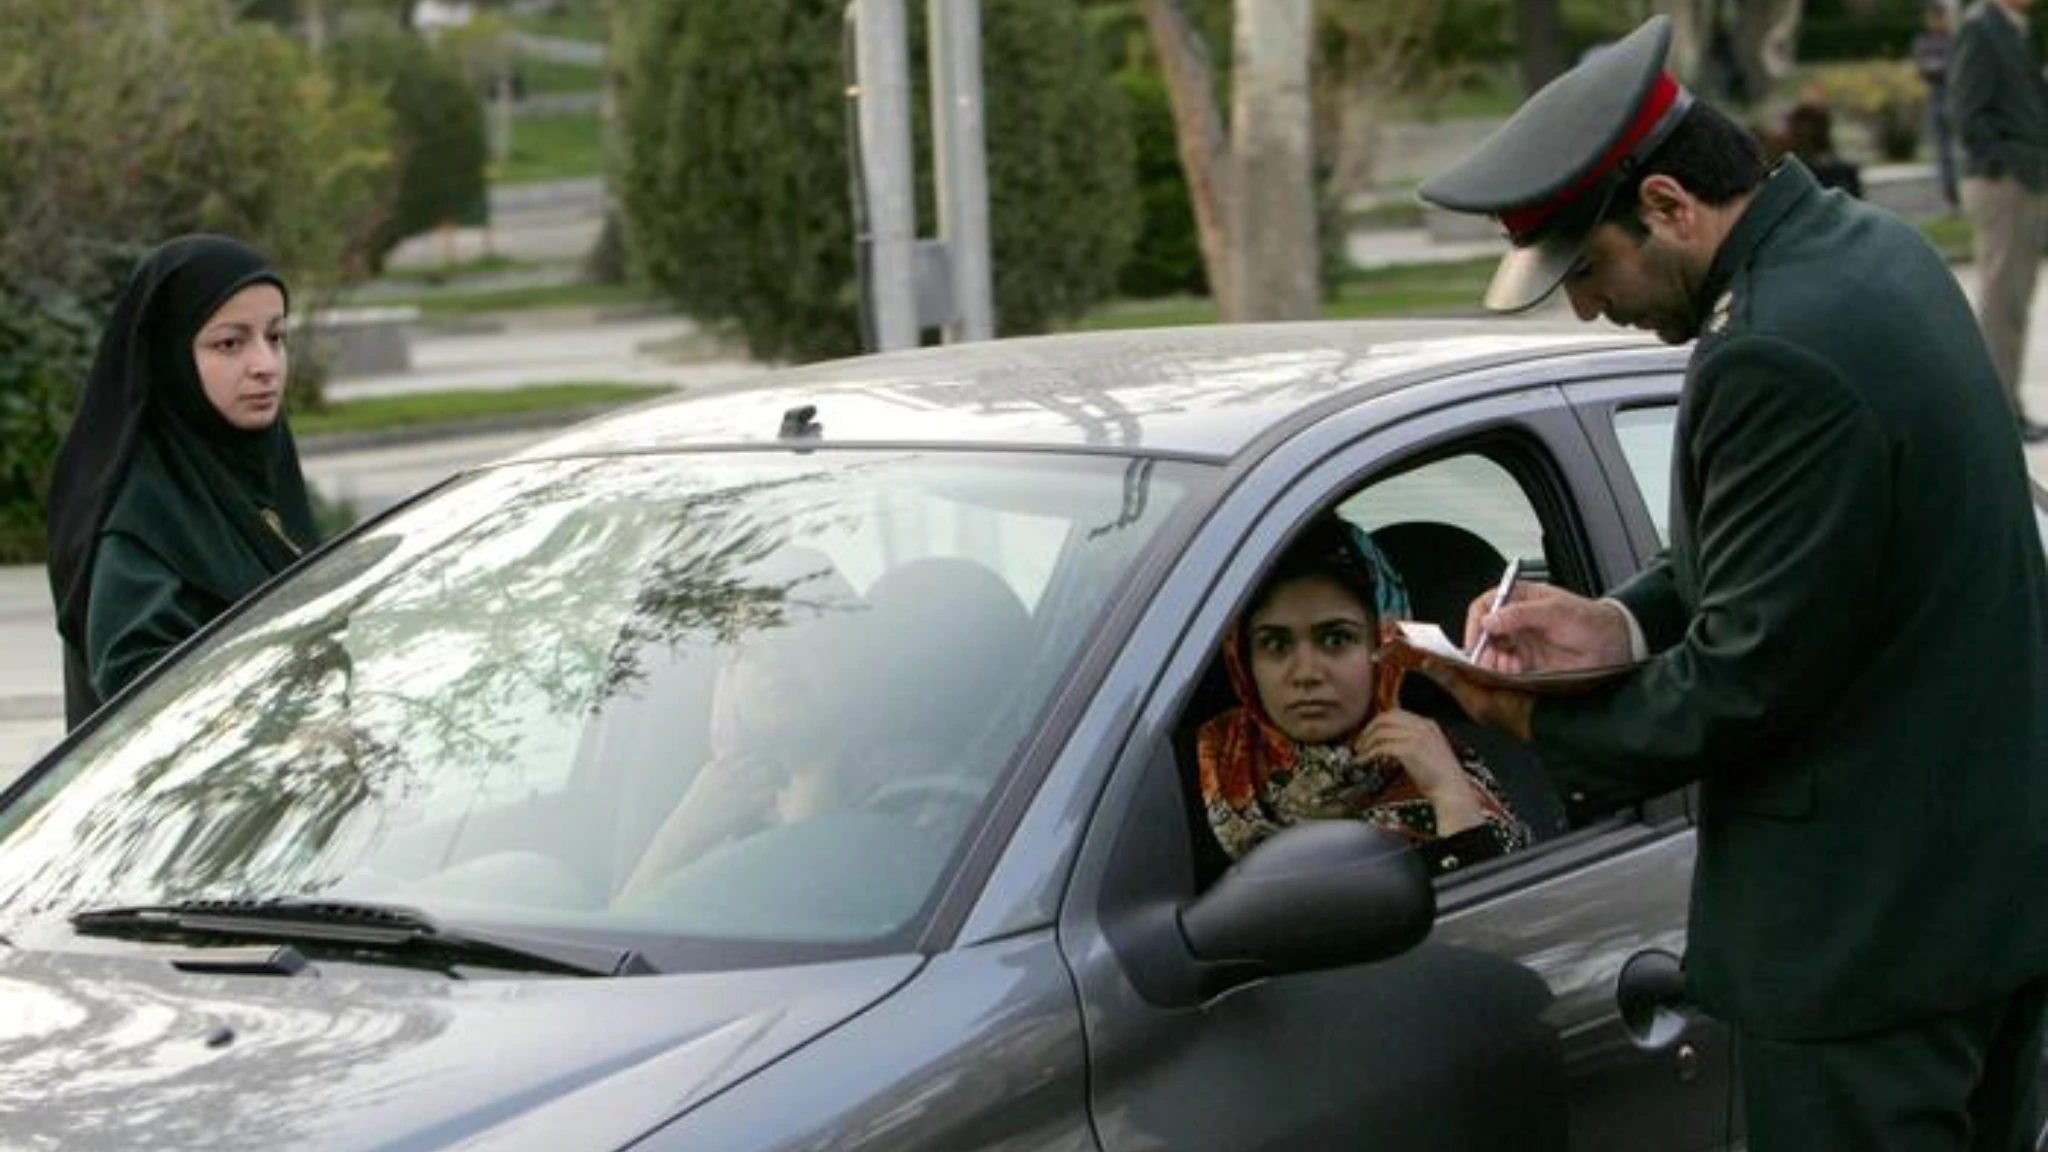 Nessuna apertura. La polizia morale riprende a controllare l'uso del velo islamico in auto